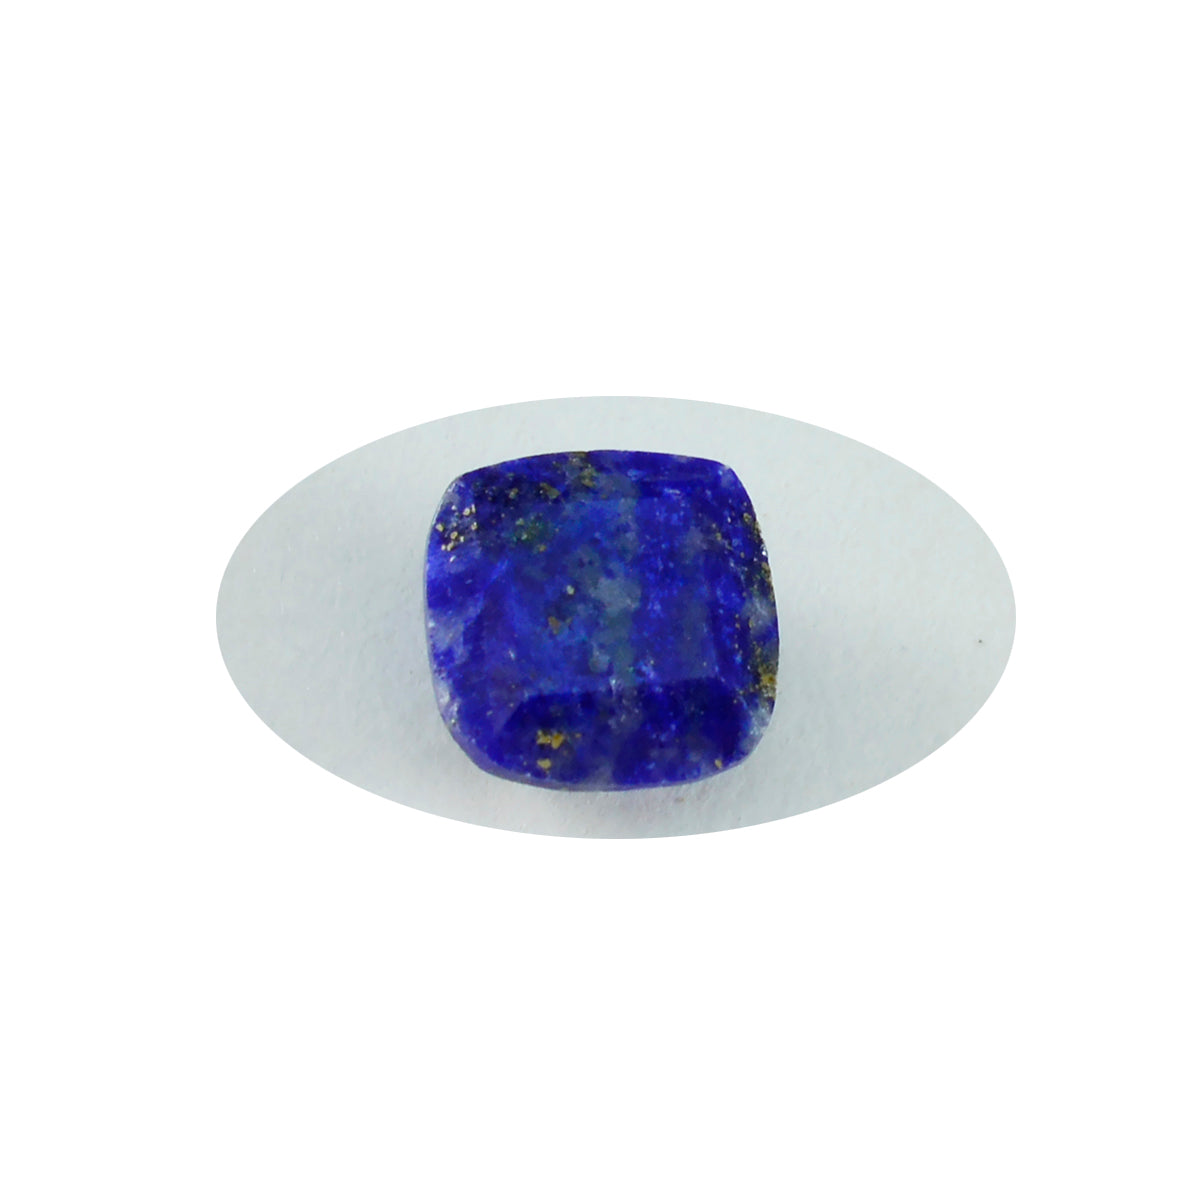 riyogems 1pc ナチュラル ブルー ラピスラズリ ファセット 10x10 mm クッション形状 AA 品質石